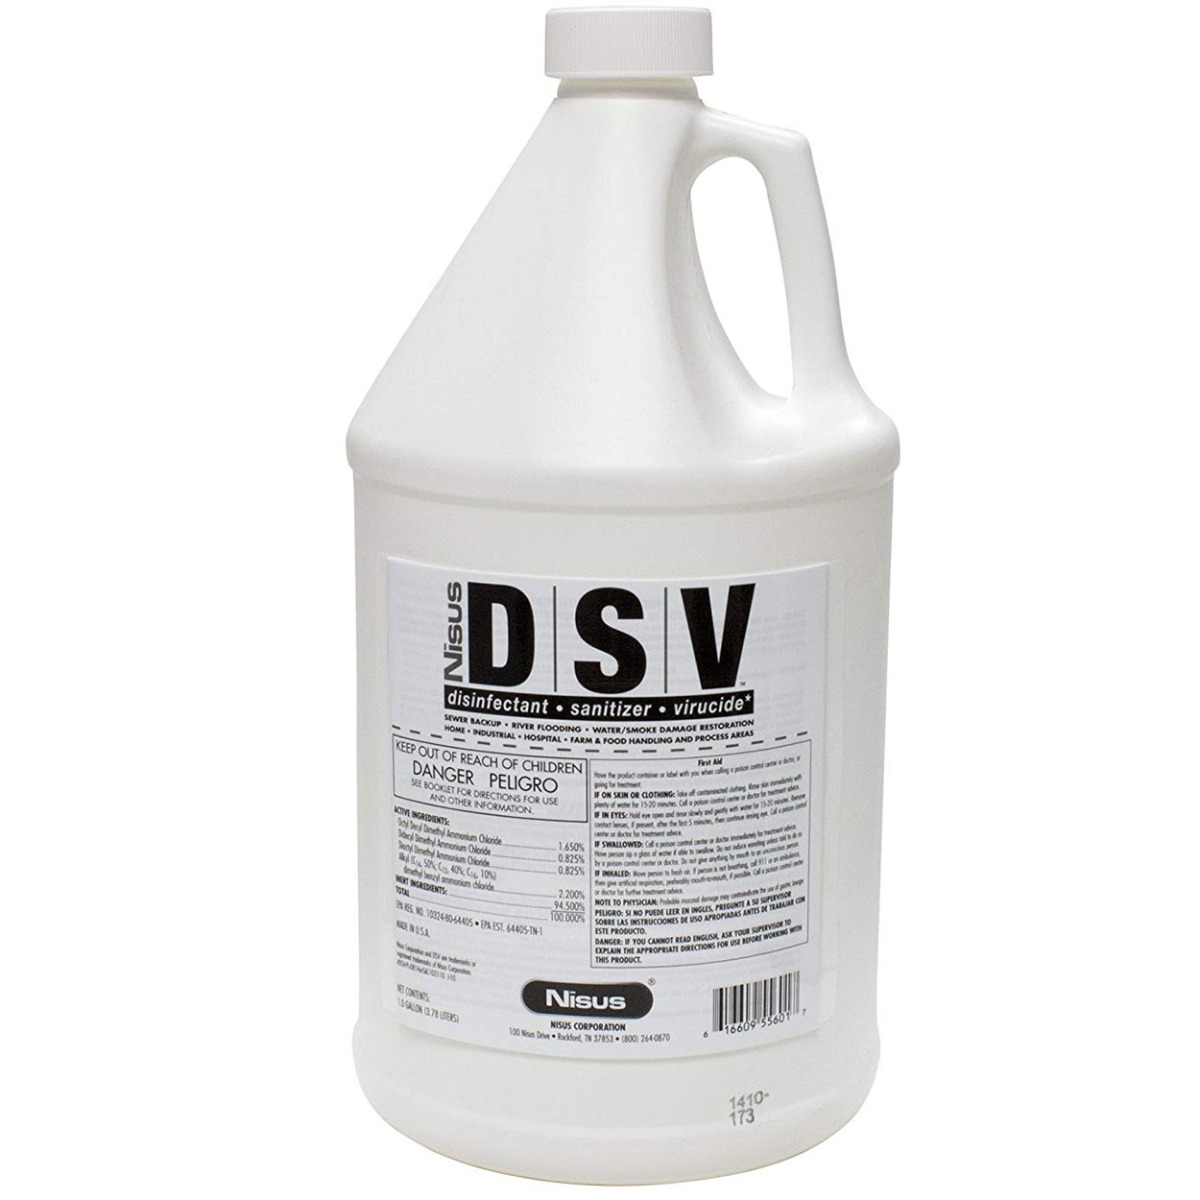 Nisus DSV - Disinfectant Sanitizer Virucid